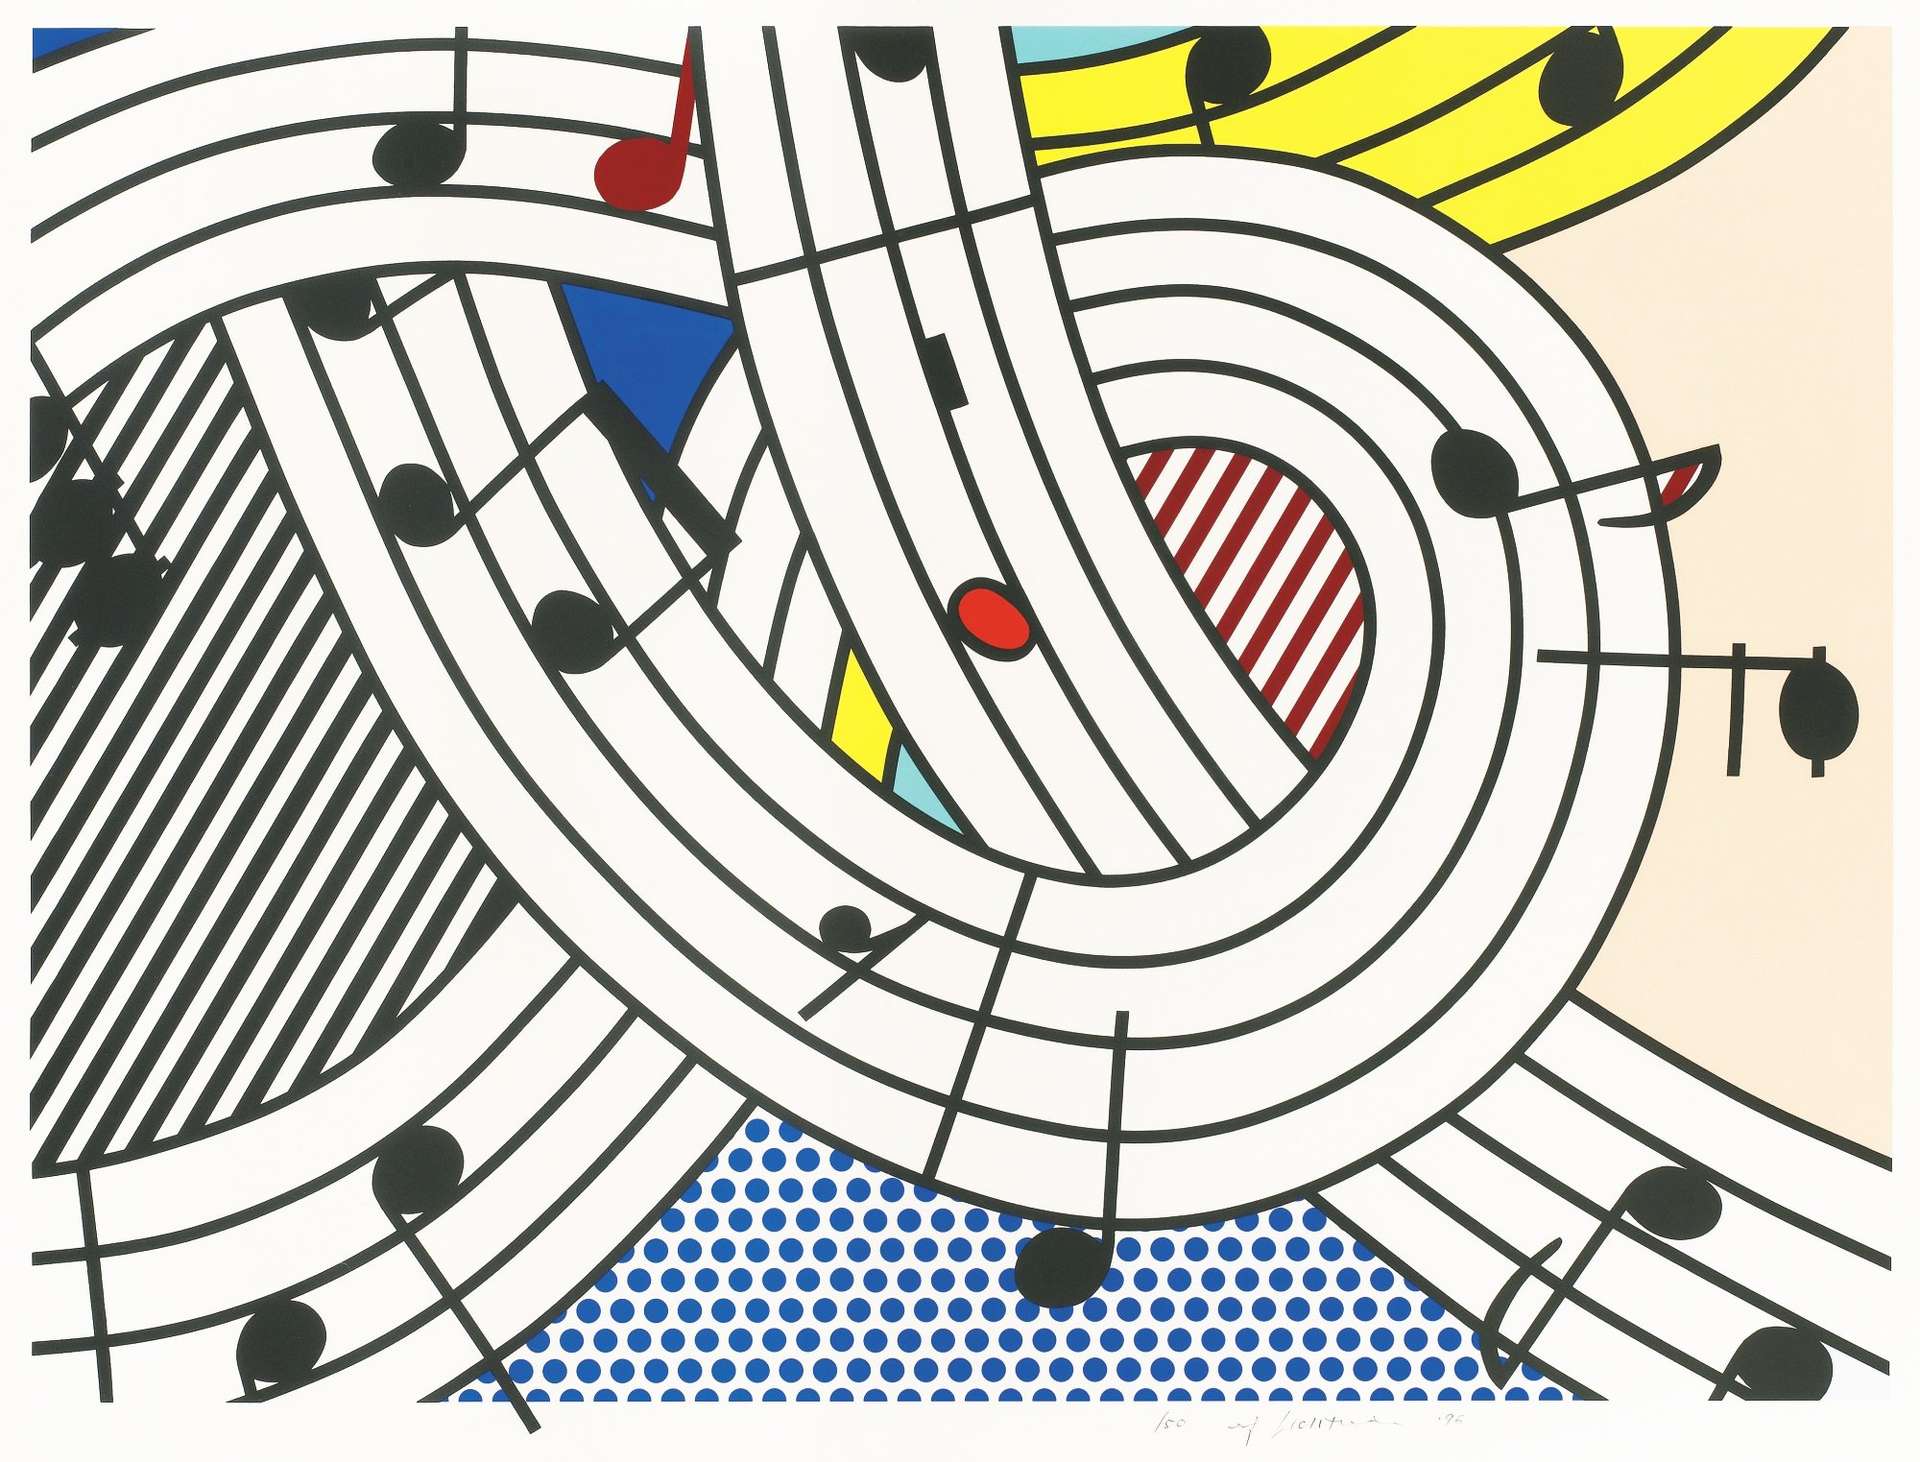 10 Facts About Roy Lichtenstein's Composition